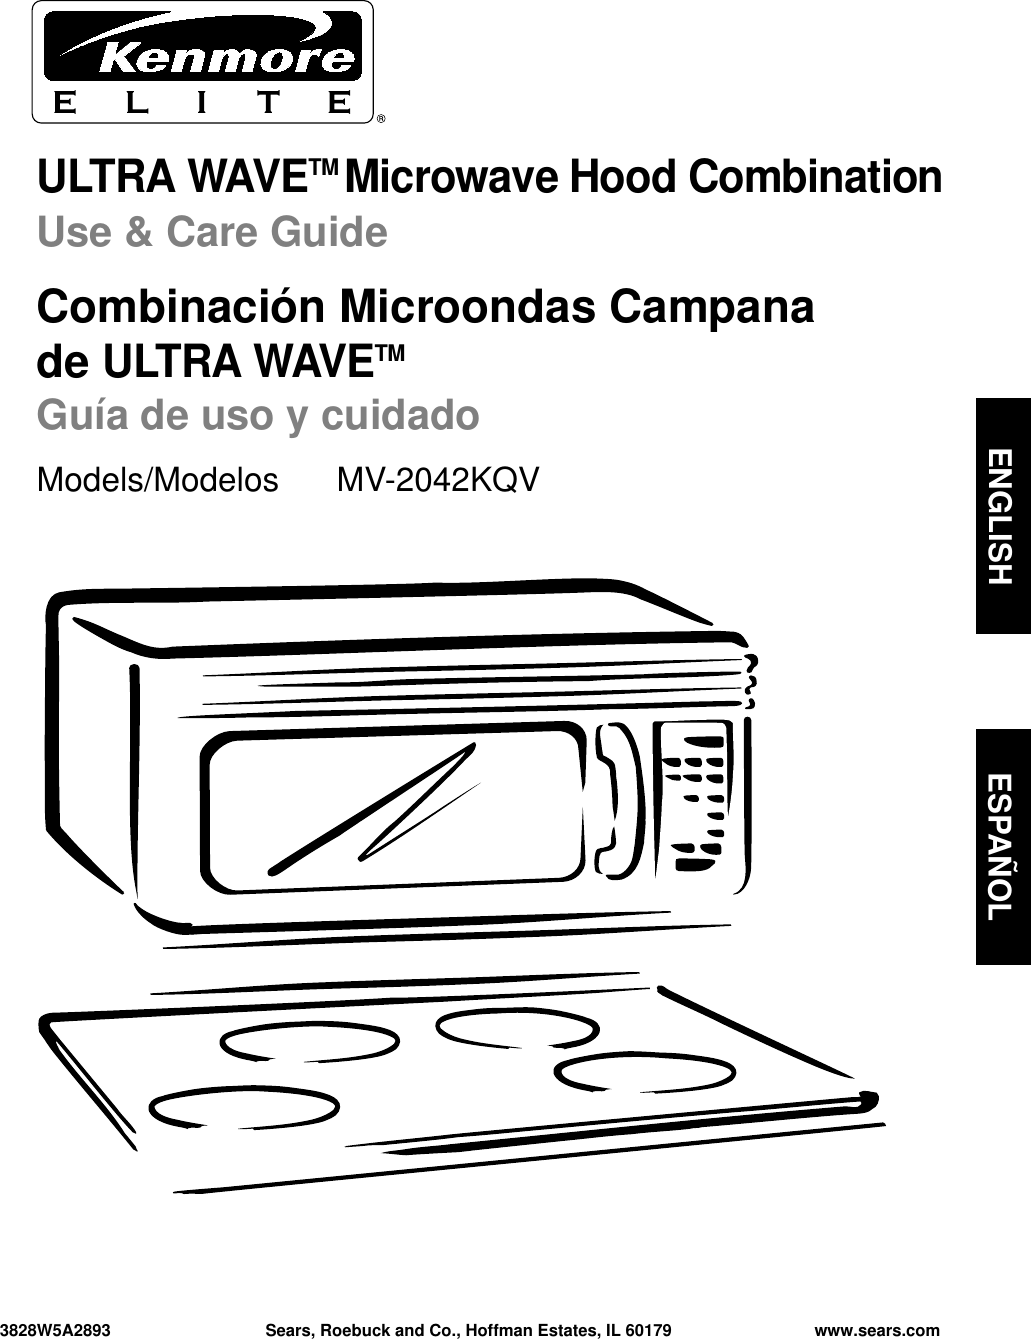 ULTRA WAVETM Microwave Hood CombinationUse &amp; Care GuideCombinación Microondas Campana de ULTRA WAVETM Guía de uso y cuidadoModels/Modelos  MV-2042KQV3828W5A2893 Sears, Roebuck and Co., Hoffman Estates, IL 60179 www.sears.comENGLISH ESPAÑOL